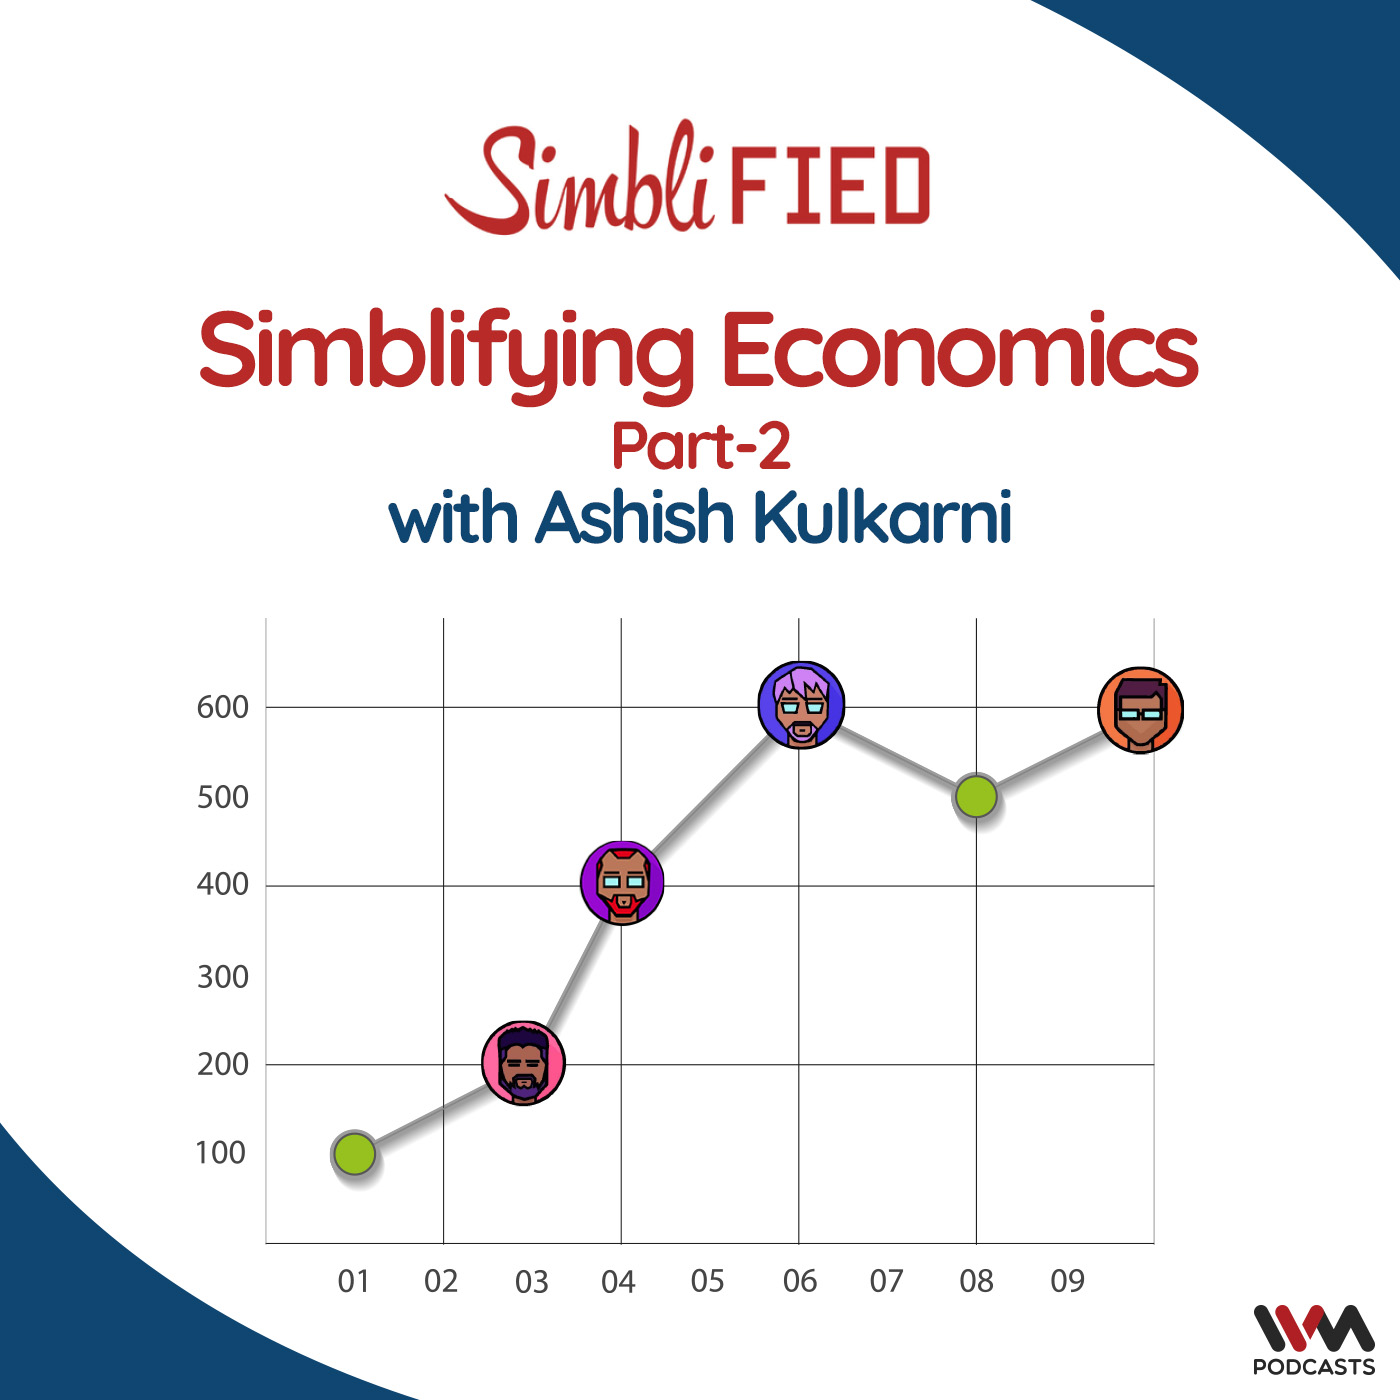 Simblifying Economics with Ashish Kulkarni Part -2